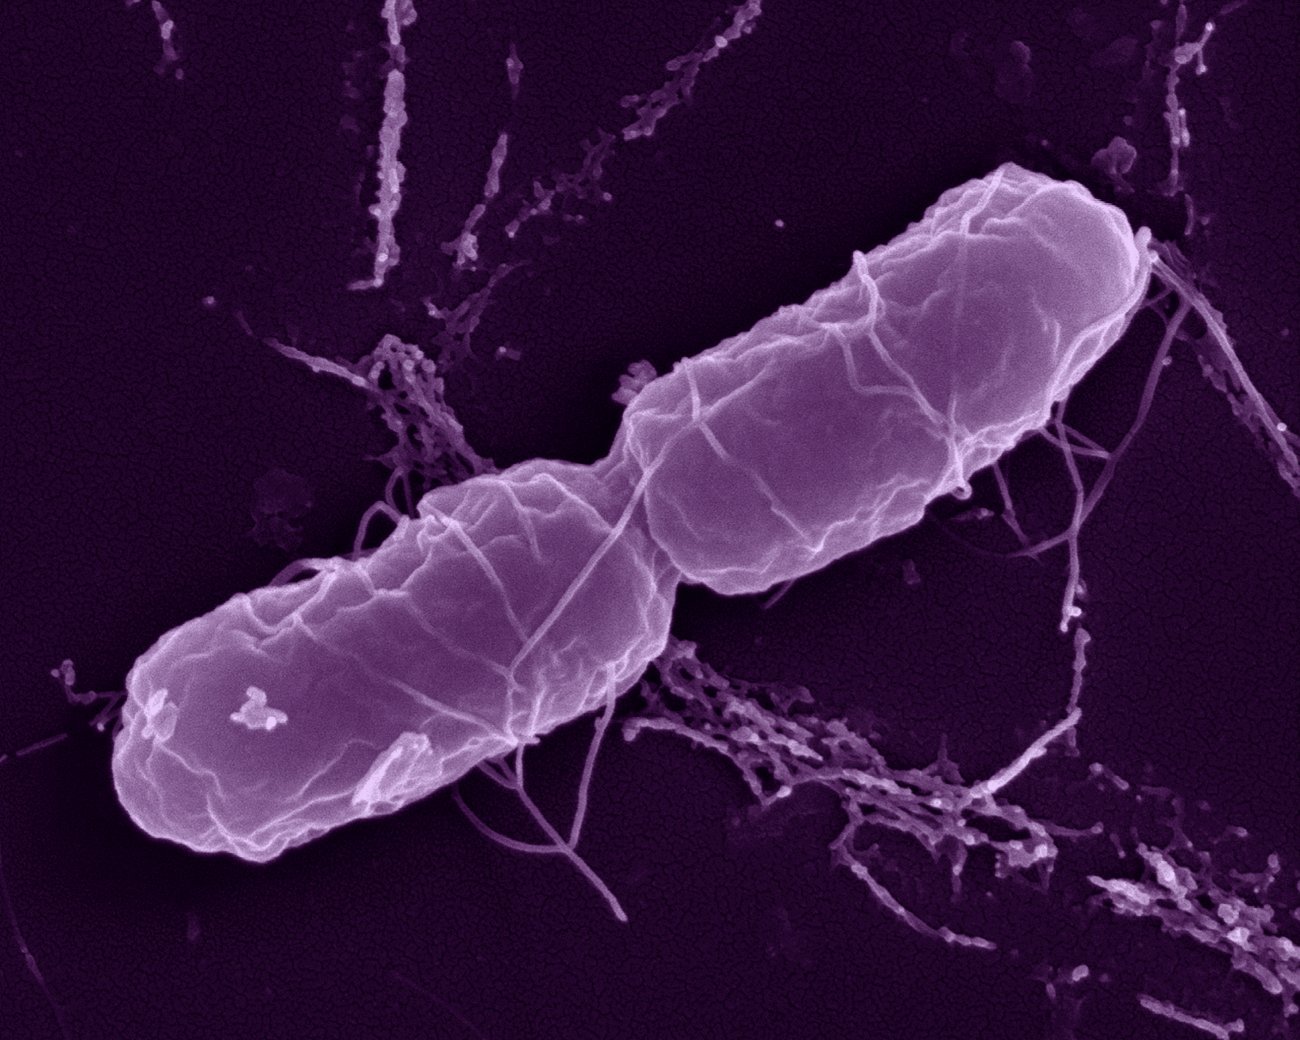 Bactérie Salmonella enterica en microscopie à balayage. © Institut Pasteur